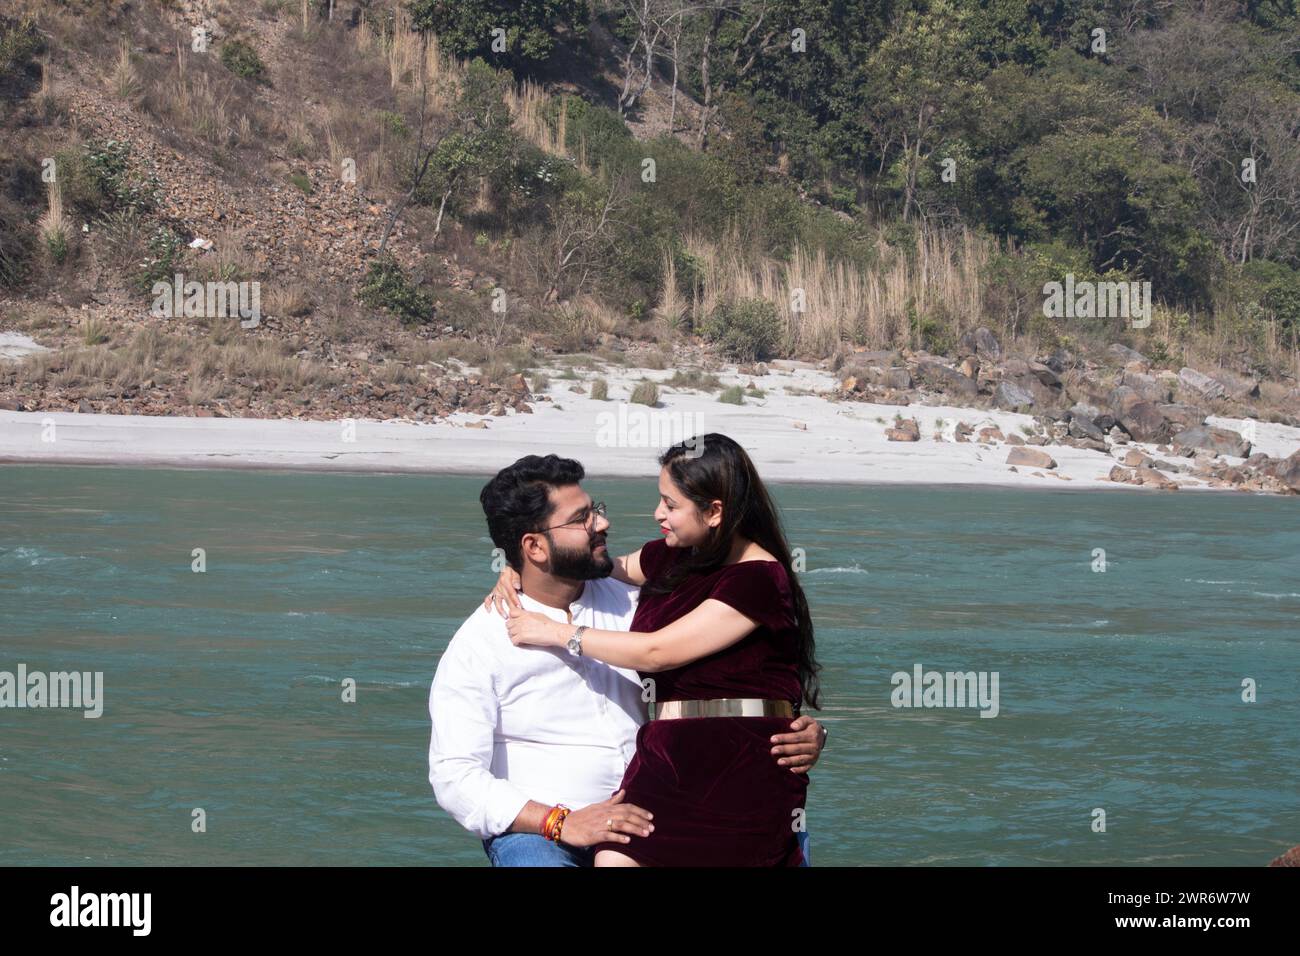 Ganges Serenade, Une étreinte intemporelle se déploie alors que le couple partage un moment tendre face à face par les eaux qui coulent Banque D'Images